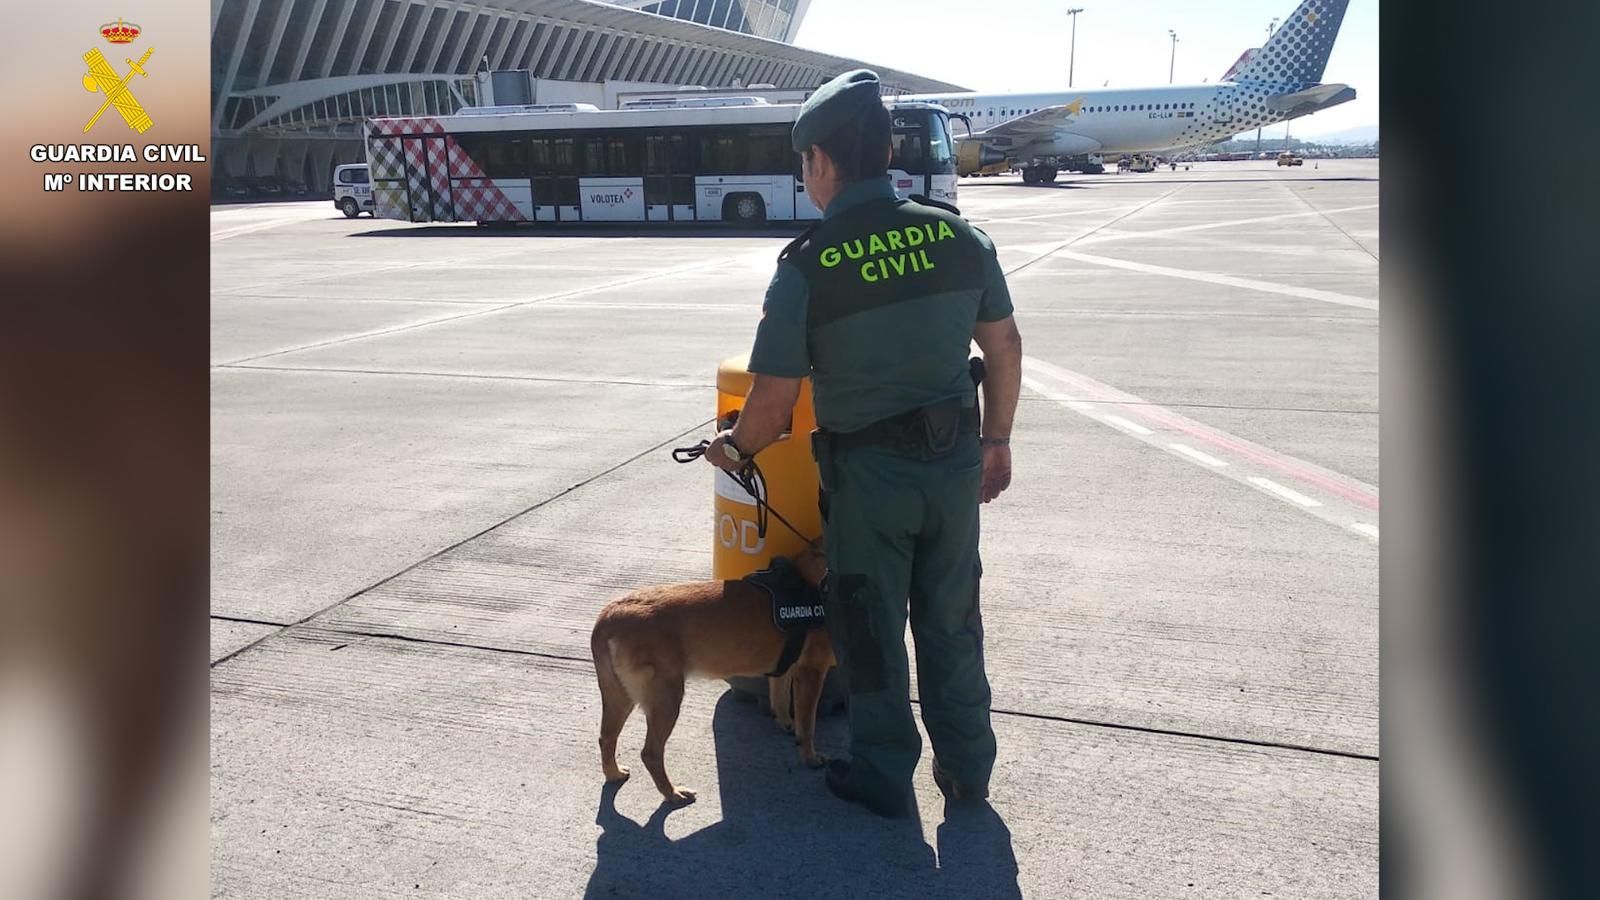 El polizón egipcio que llegó a Bilbao en la bodega de un avión pide asilo en España: “Mi vida corre peligro”